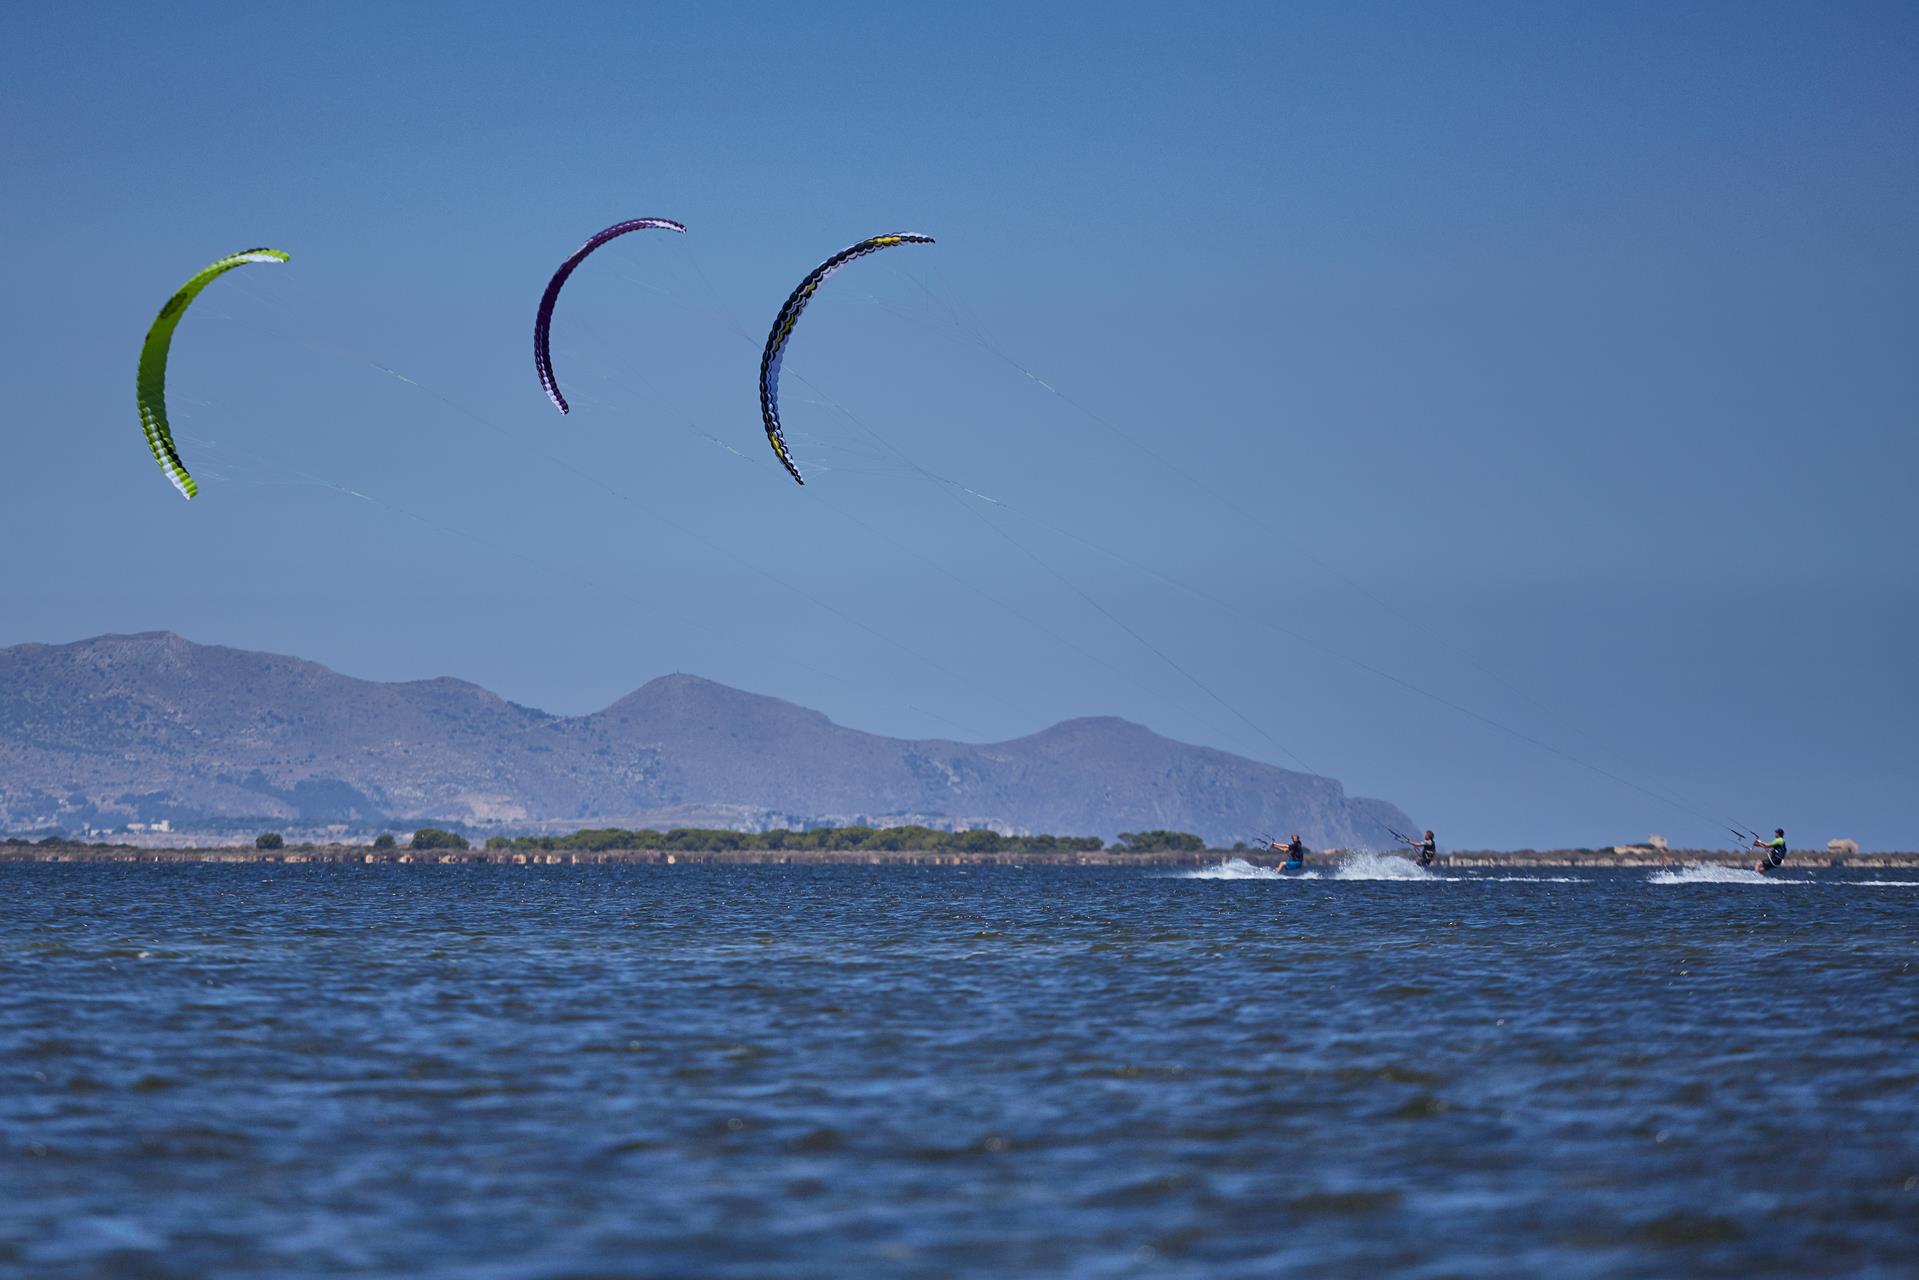 test-kite-Flysurfer-Speed5-02.jpg